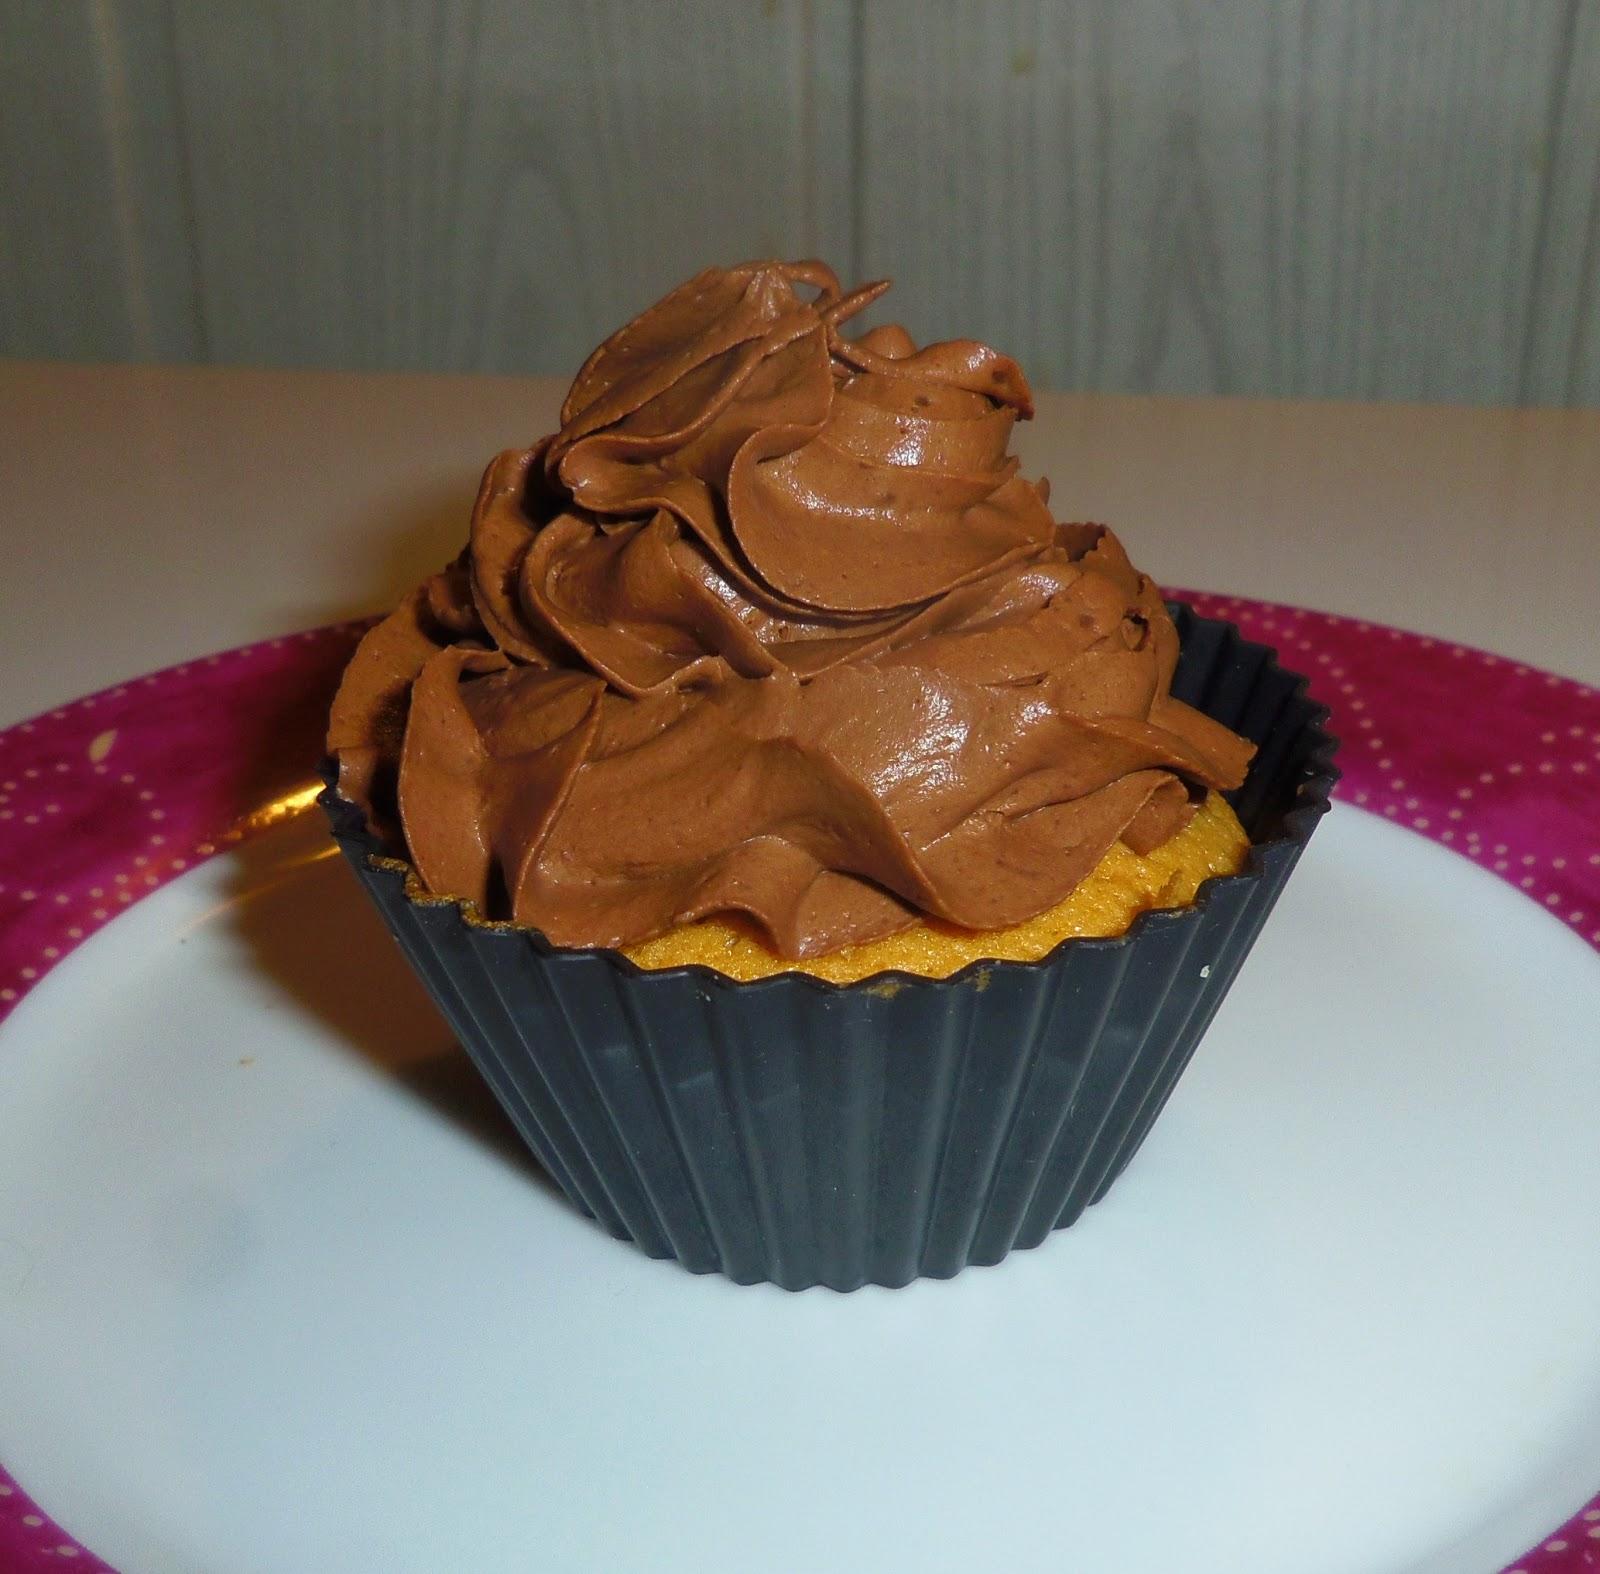 Mon premier cupcake: Ganache montée au chocolat noir et coeur confiture de griottes